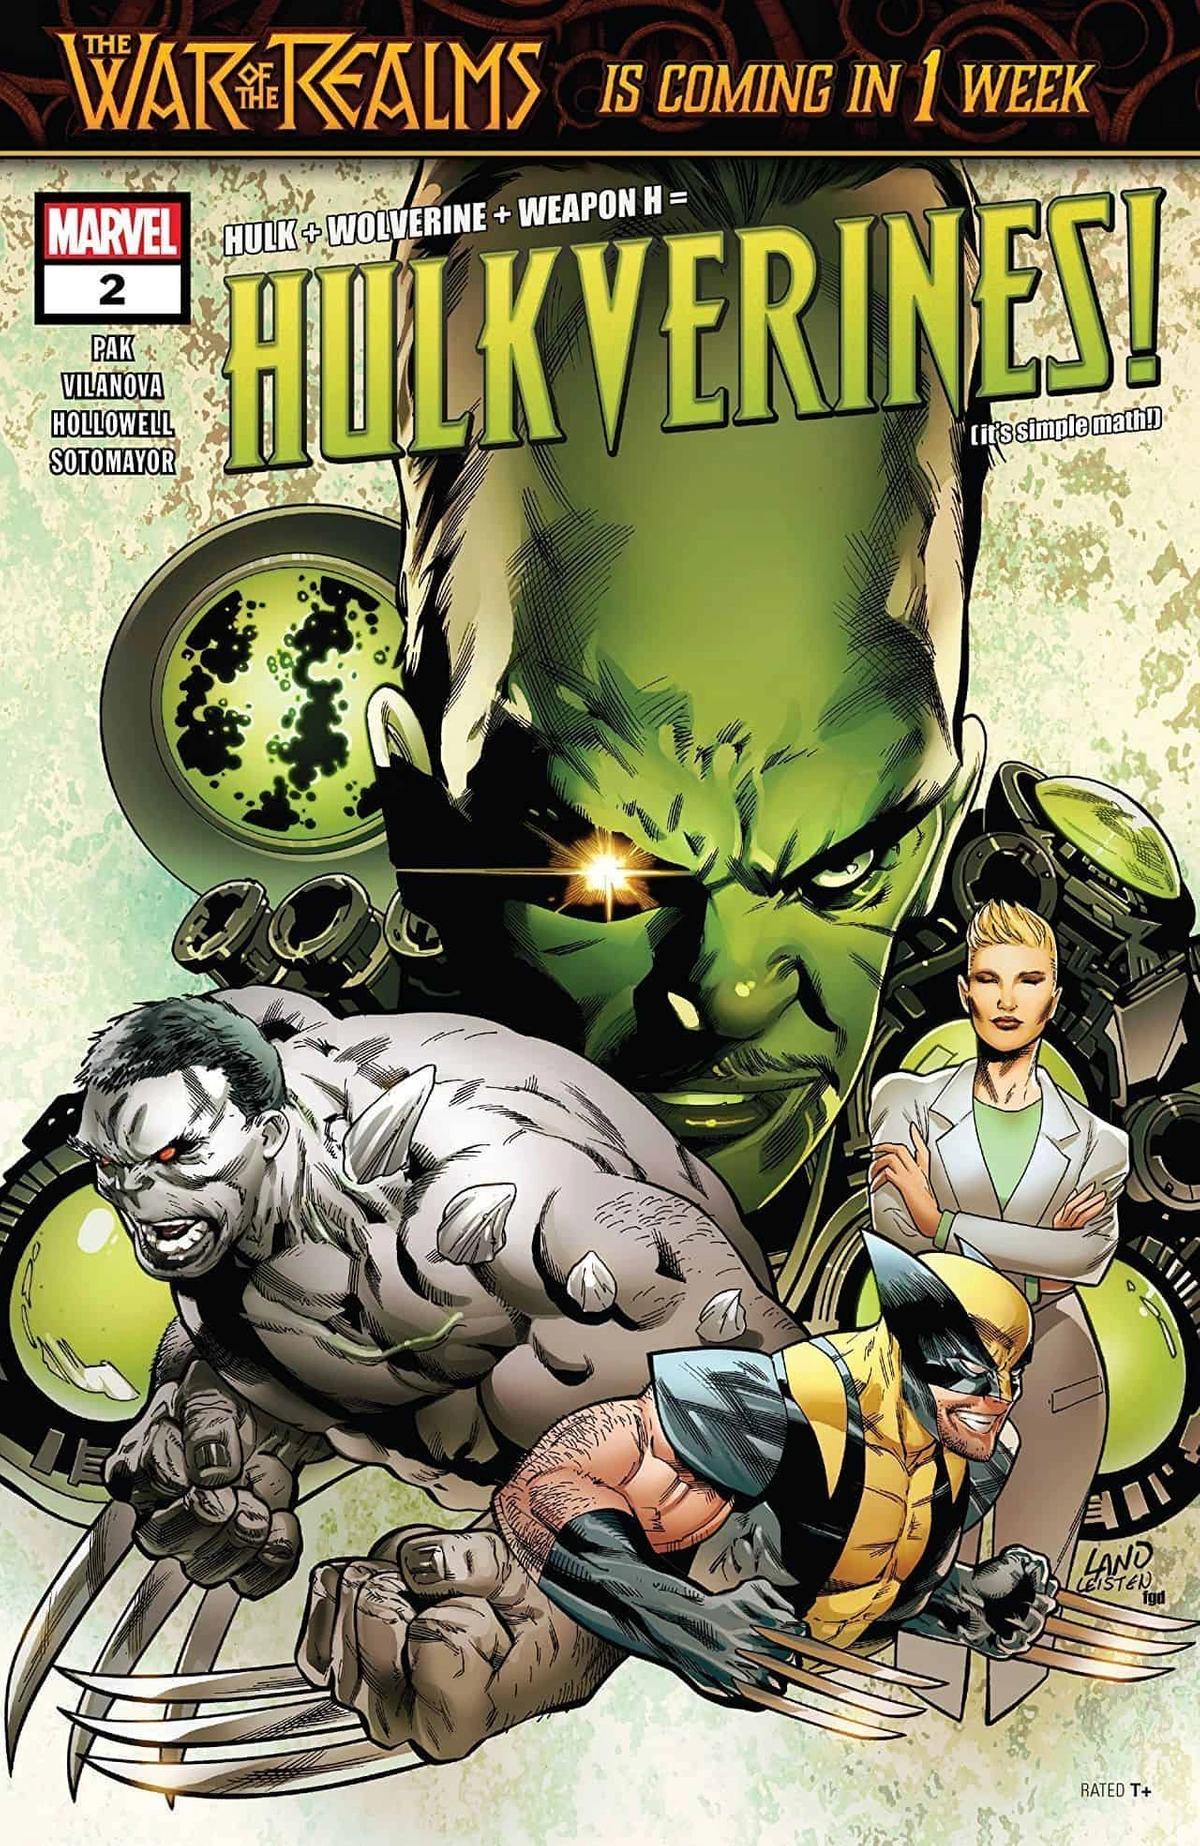 Conheça a História do Hulkverine, a Poderosa Fusão entre Hulk e Wolverine nos Quadrinhos Marvel